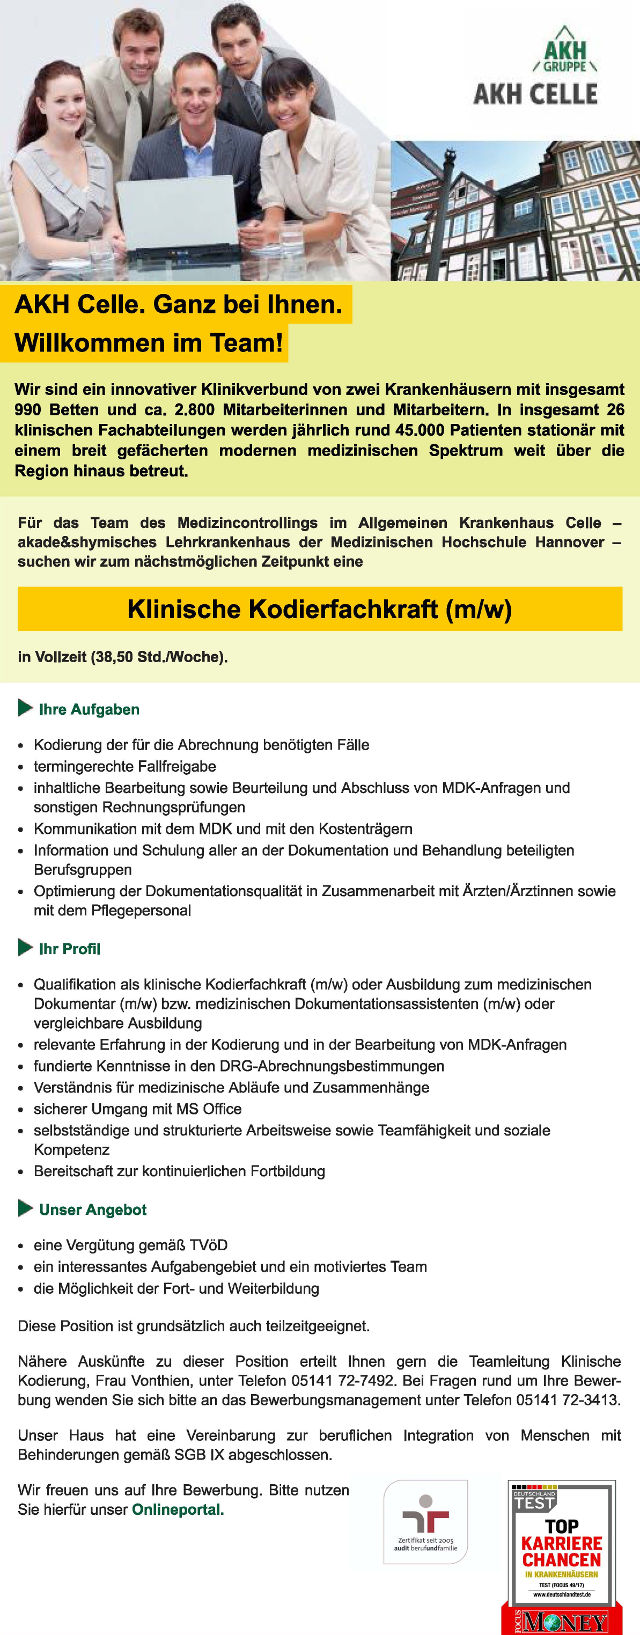 Allgemeines Krankenhaus Celle: Klinische Kodierfachkraft (m/w)